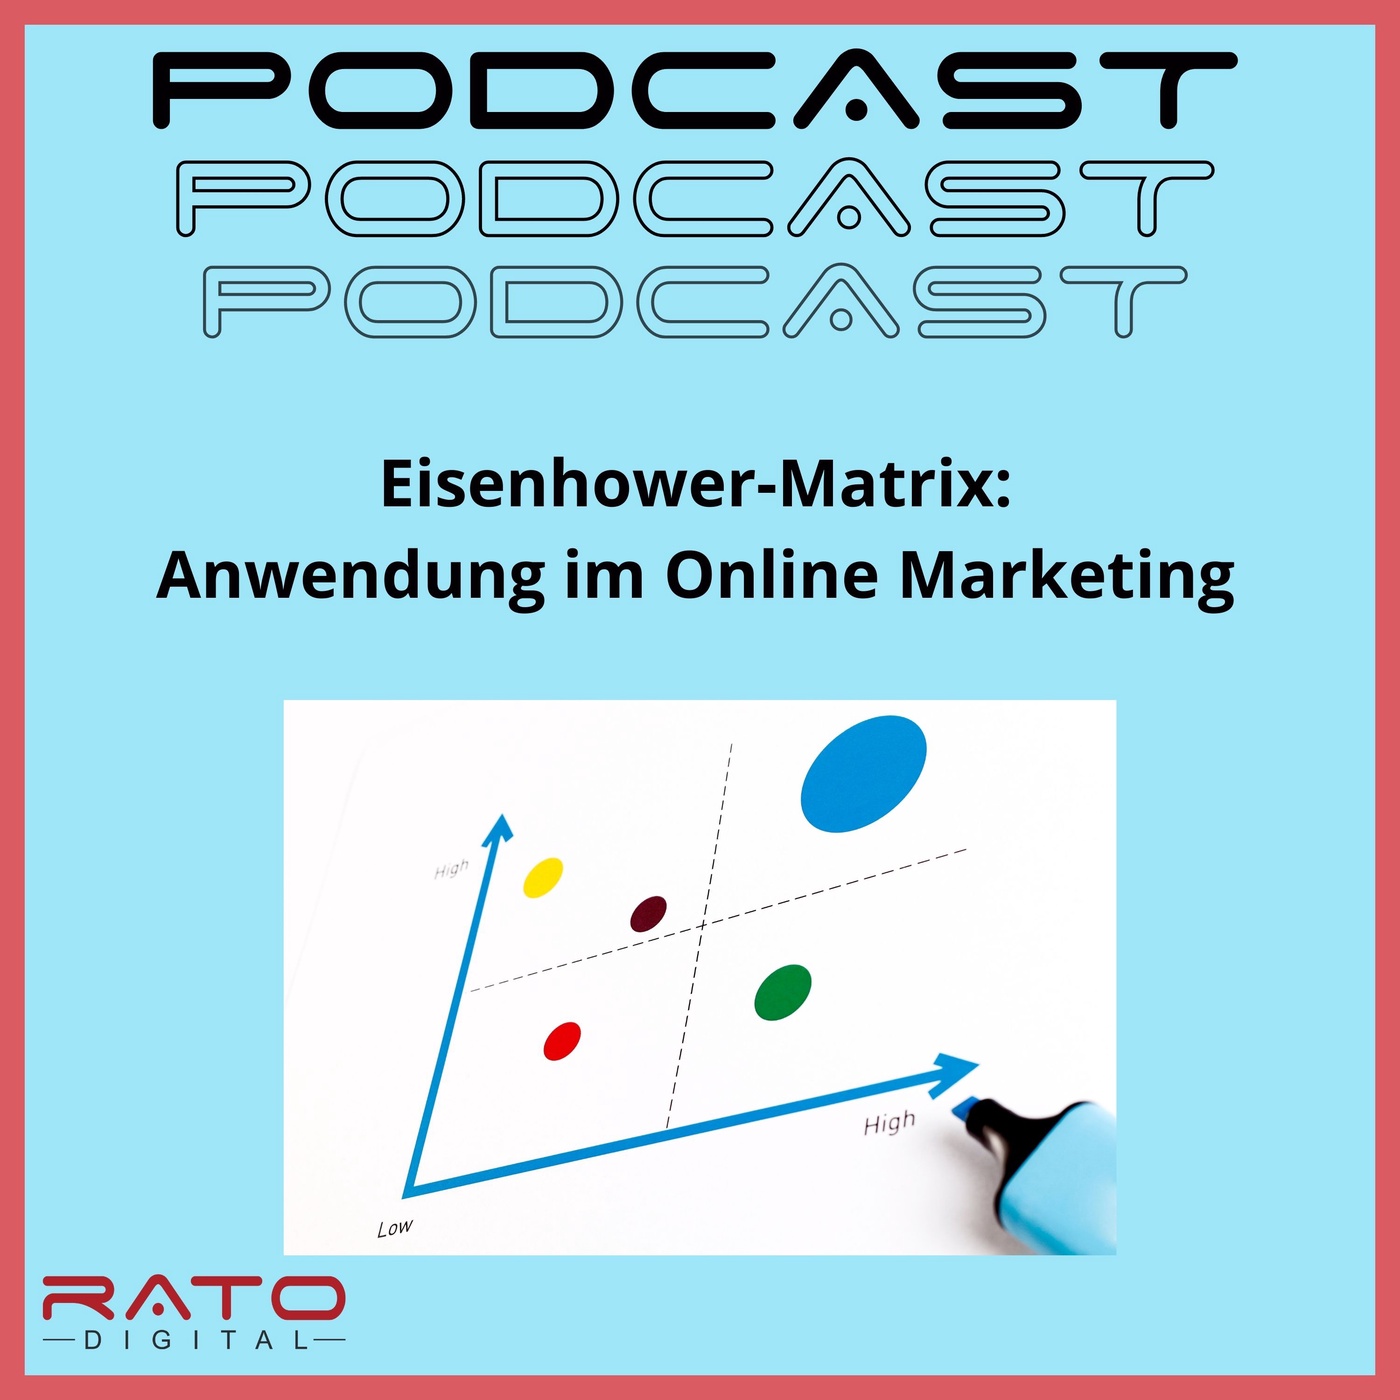 Eisenhower-Matrix: Anwendung im Online Marketing